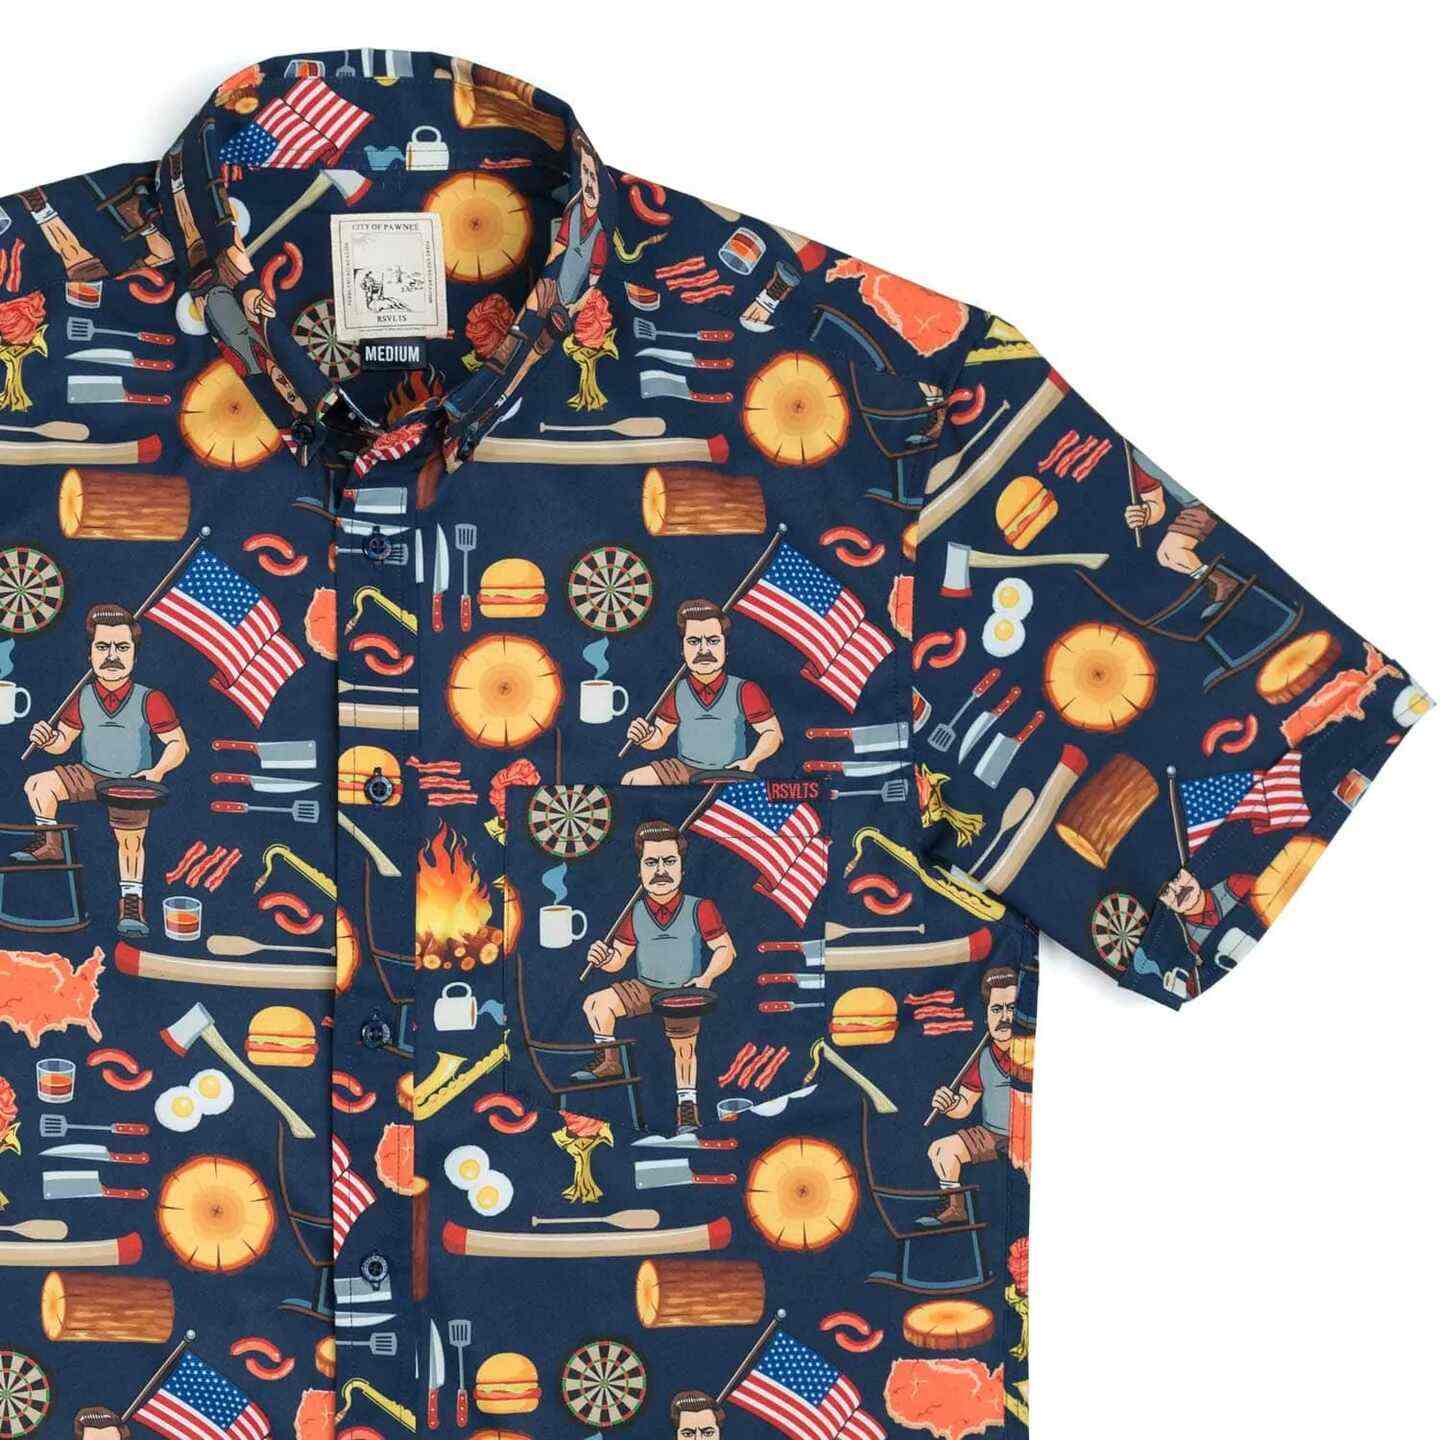 Ron Swanson's Shirt of Greatness – KUNUFLEX Short Sleeve Shirt